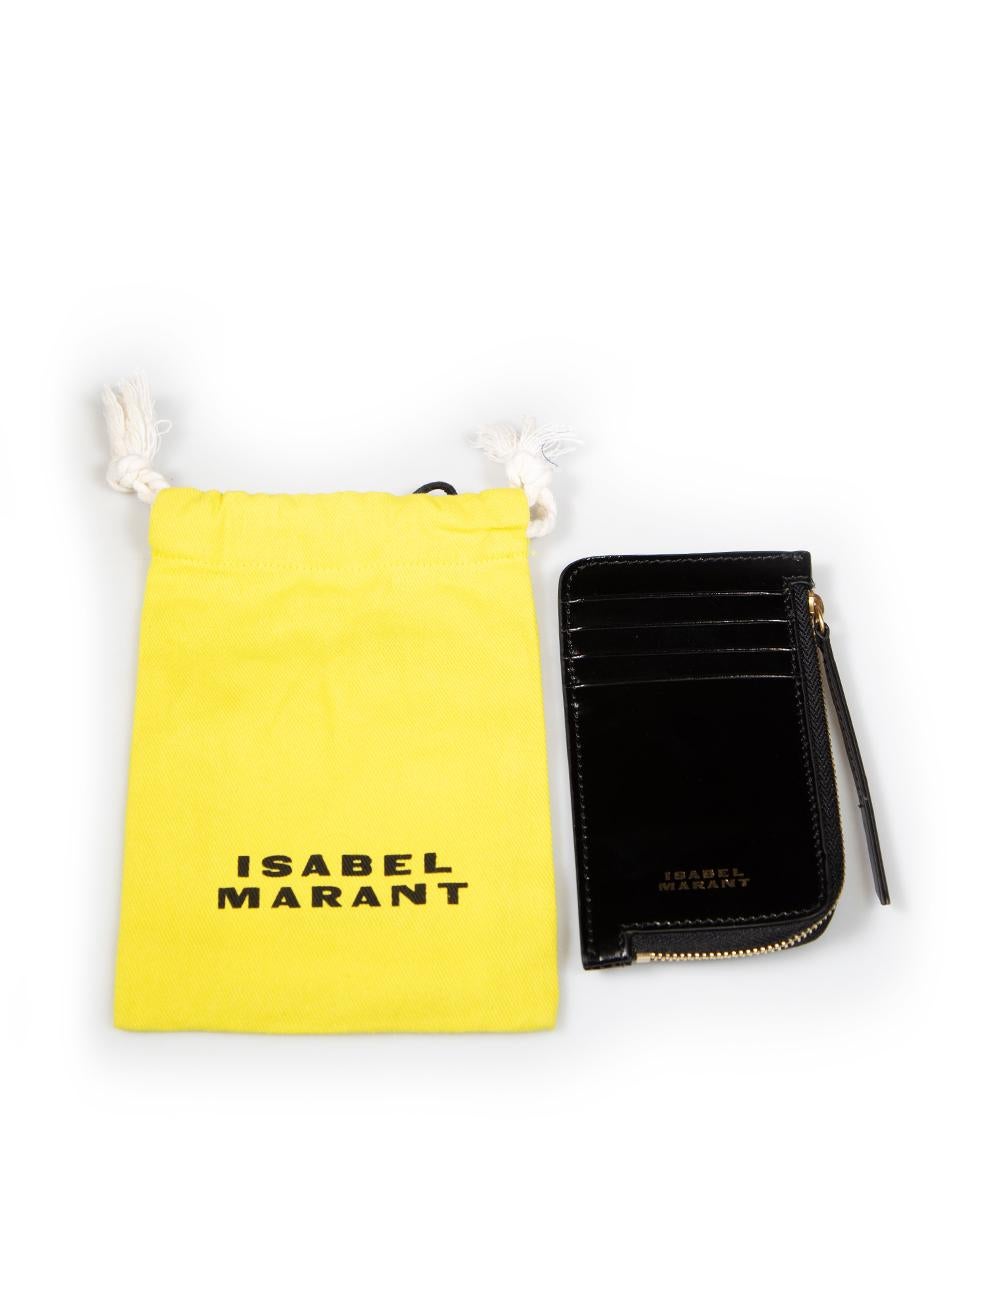 Isabel Marant Black Leather Kochi Card Holder For Sale 2